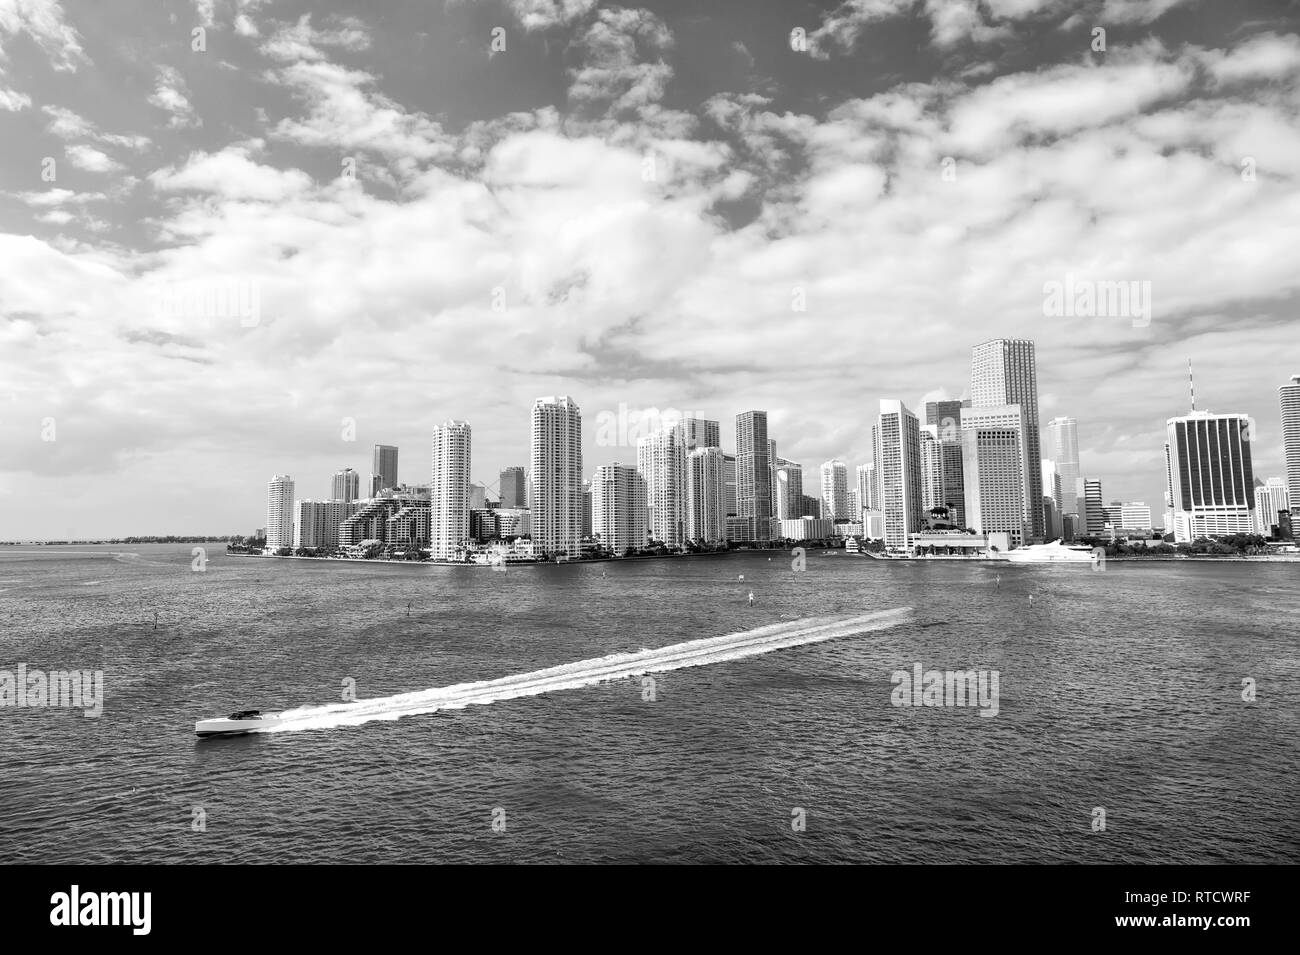 Gratte-ciel de Miami avec bleu ciel nuageux,yacht ou bateau naviguant près de centre-ville de Miami, Aerial view, South Beach Banque D'Images